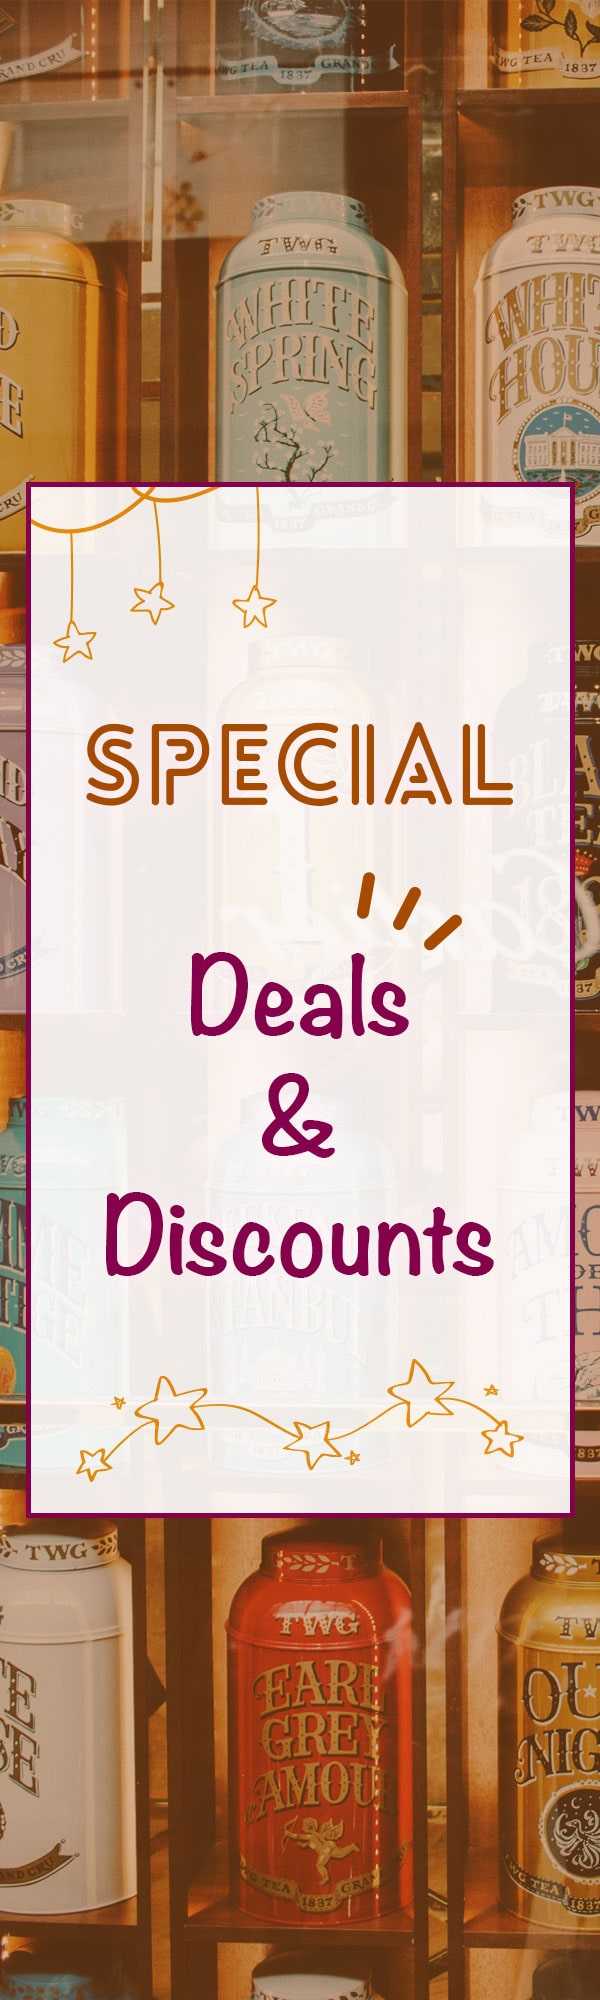 Special Deals & Discounts